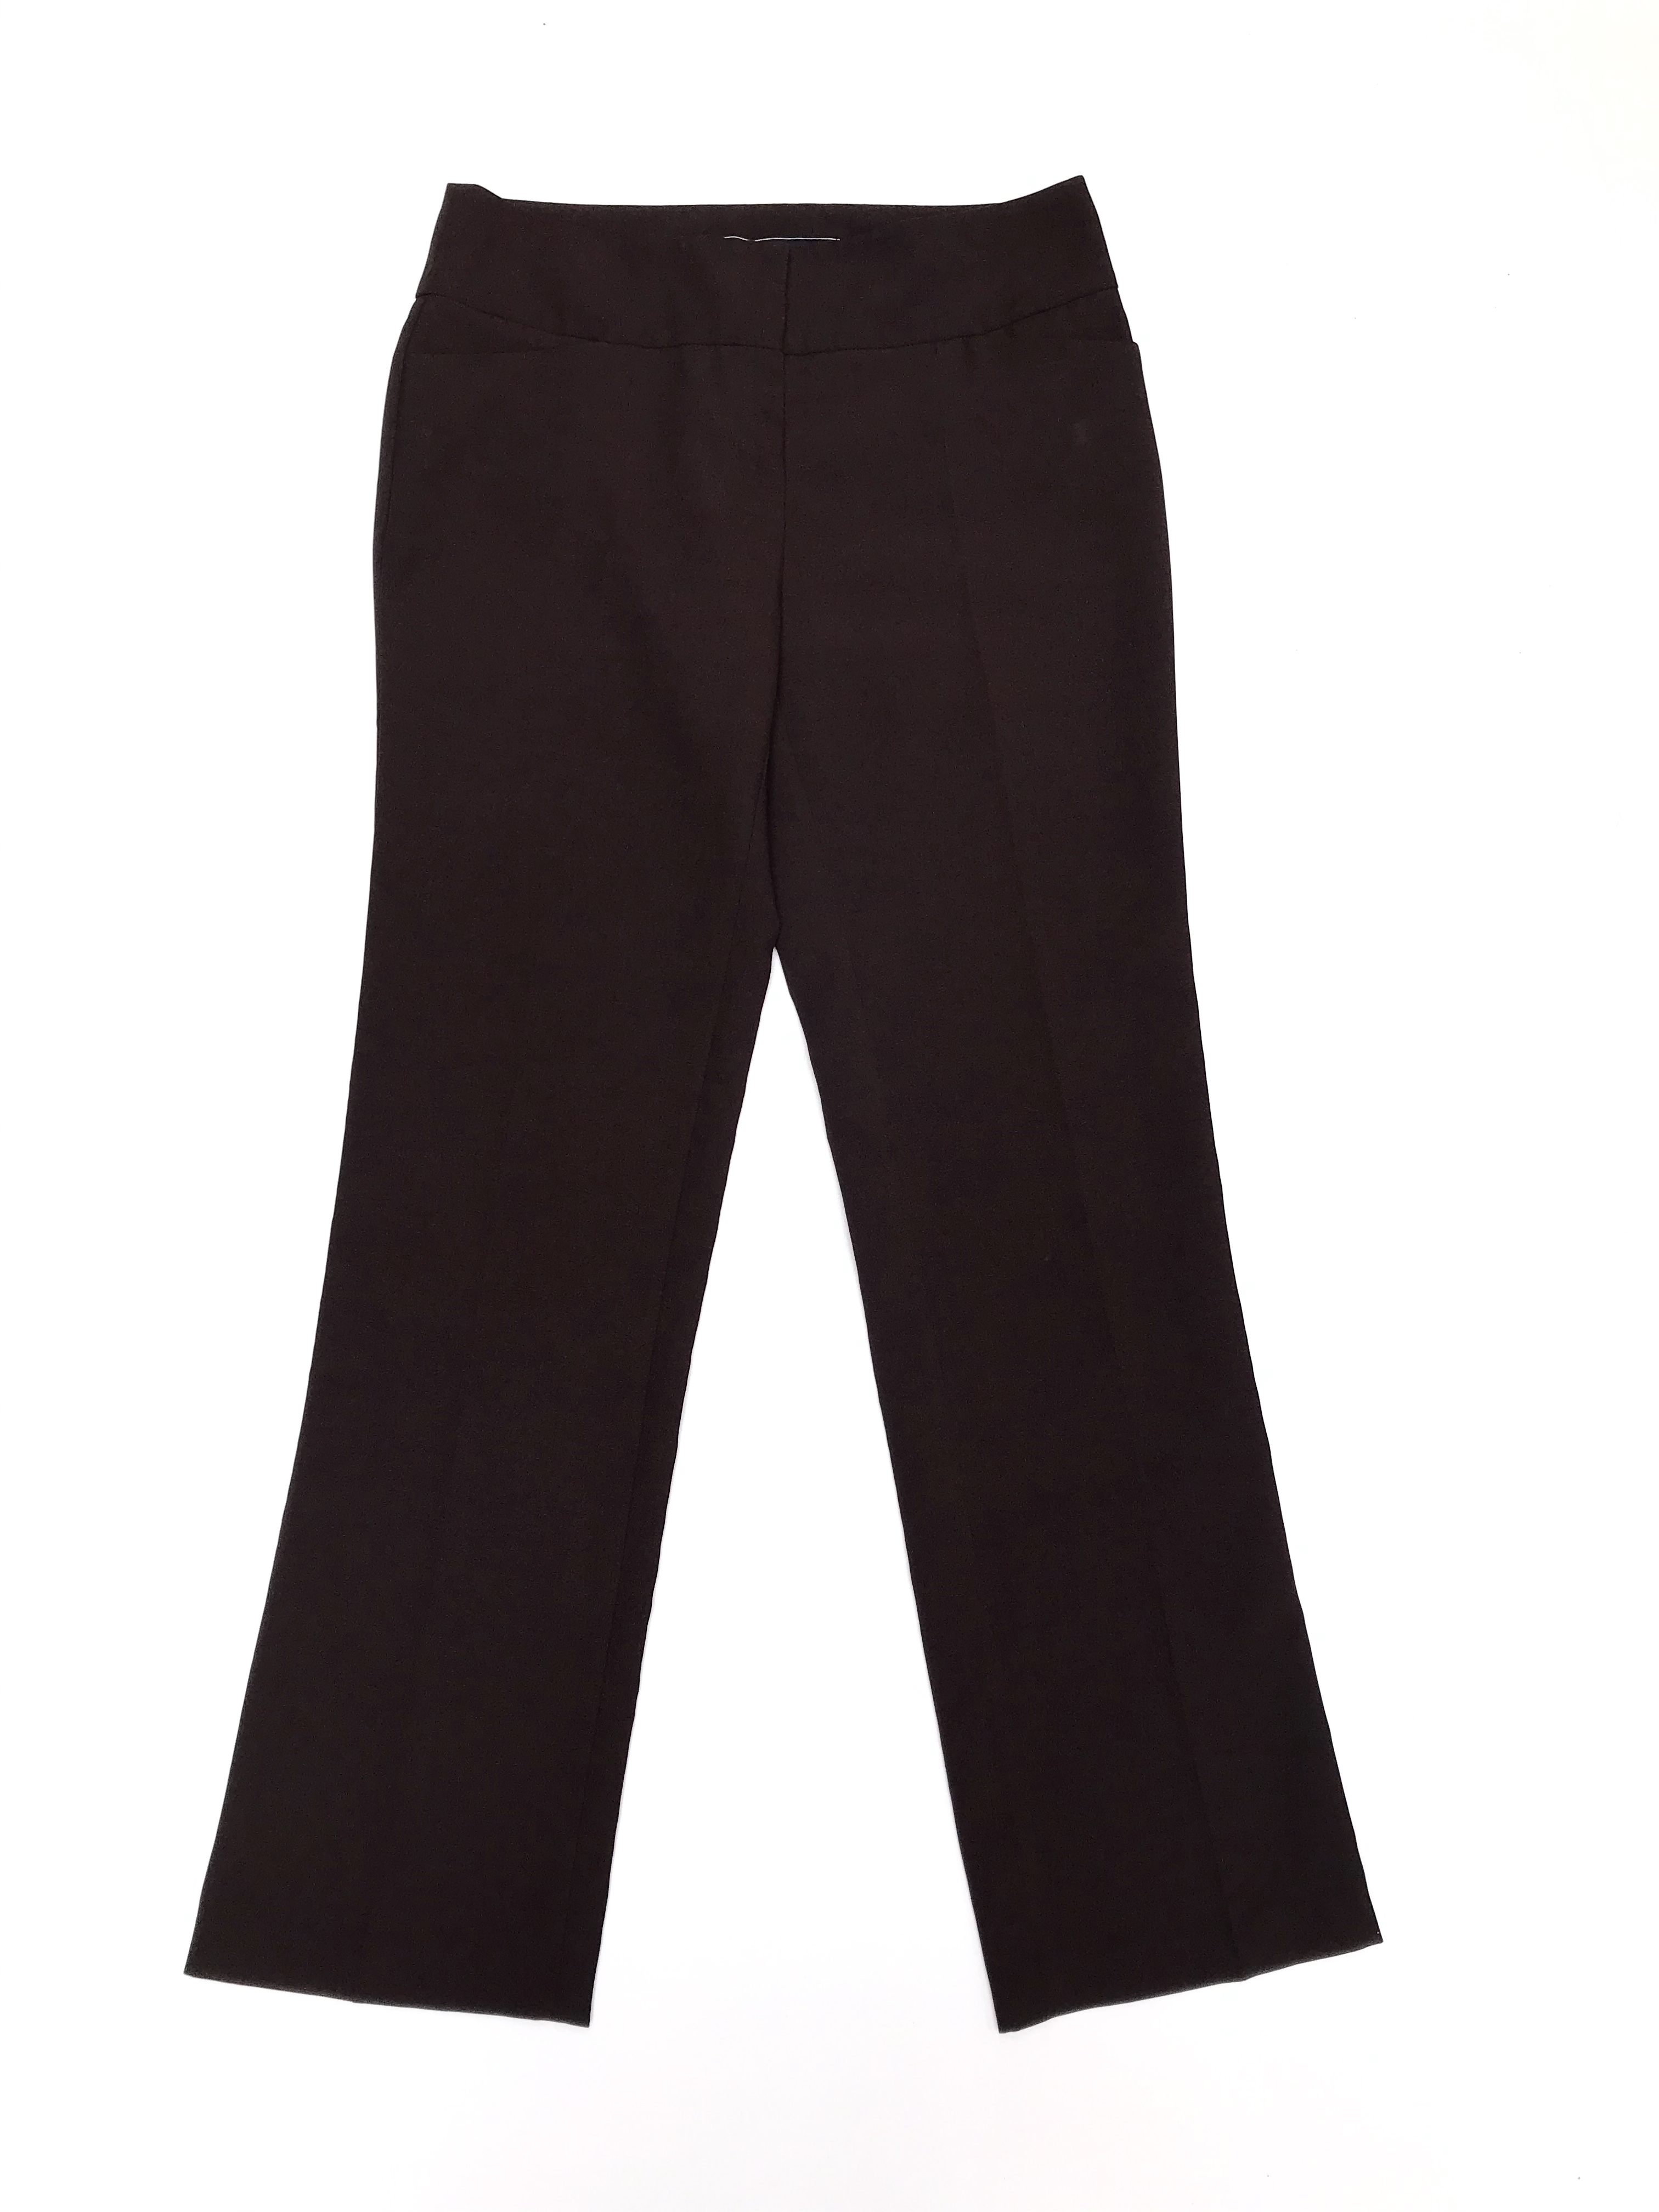 Pantalón Marquis de vestir marrón con bolsillos laterales y posteriores, corte recto